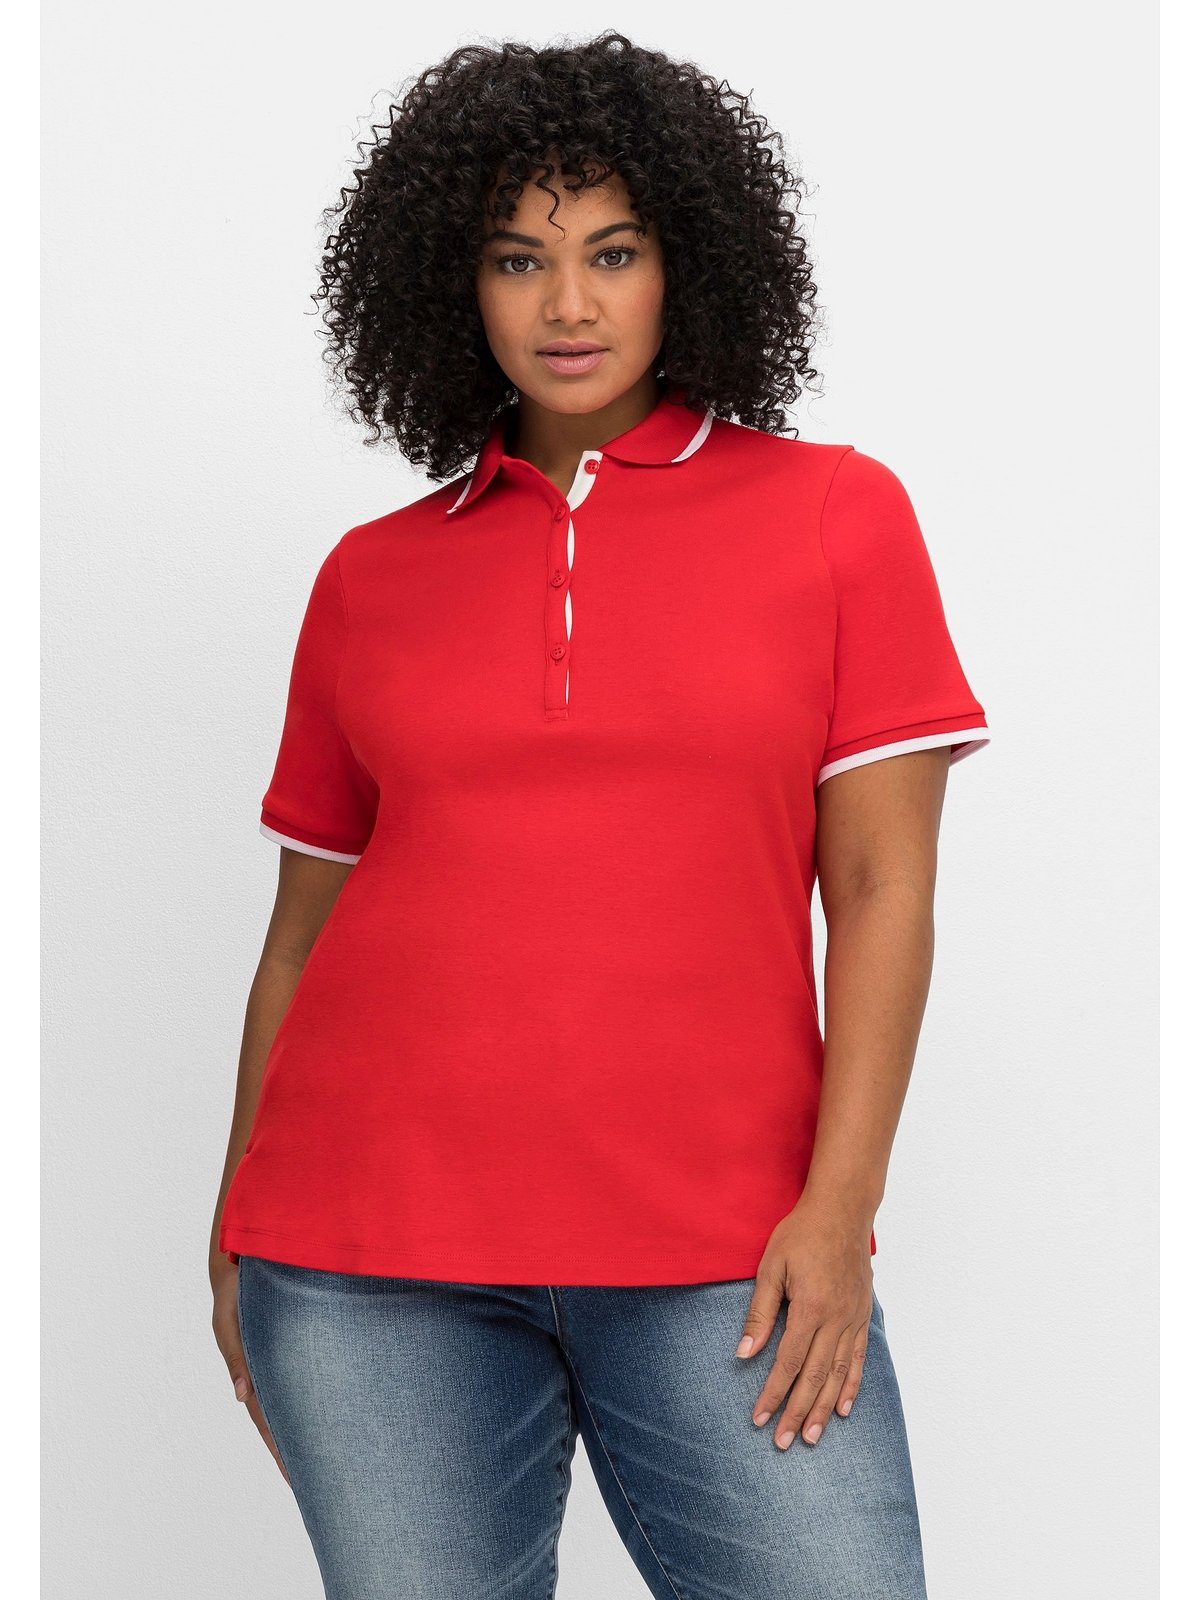 Sheego T-Shirt Große Größen Kontrastkanten, tailliert mit leicht